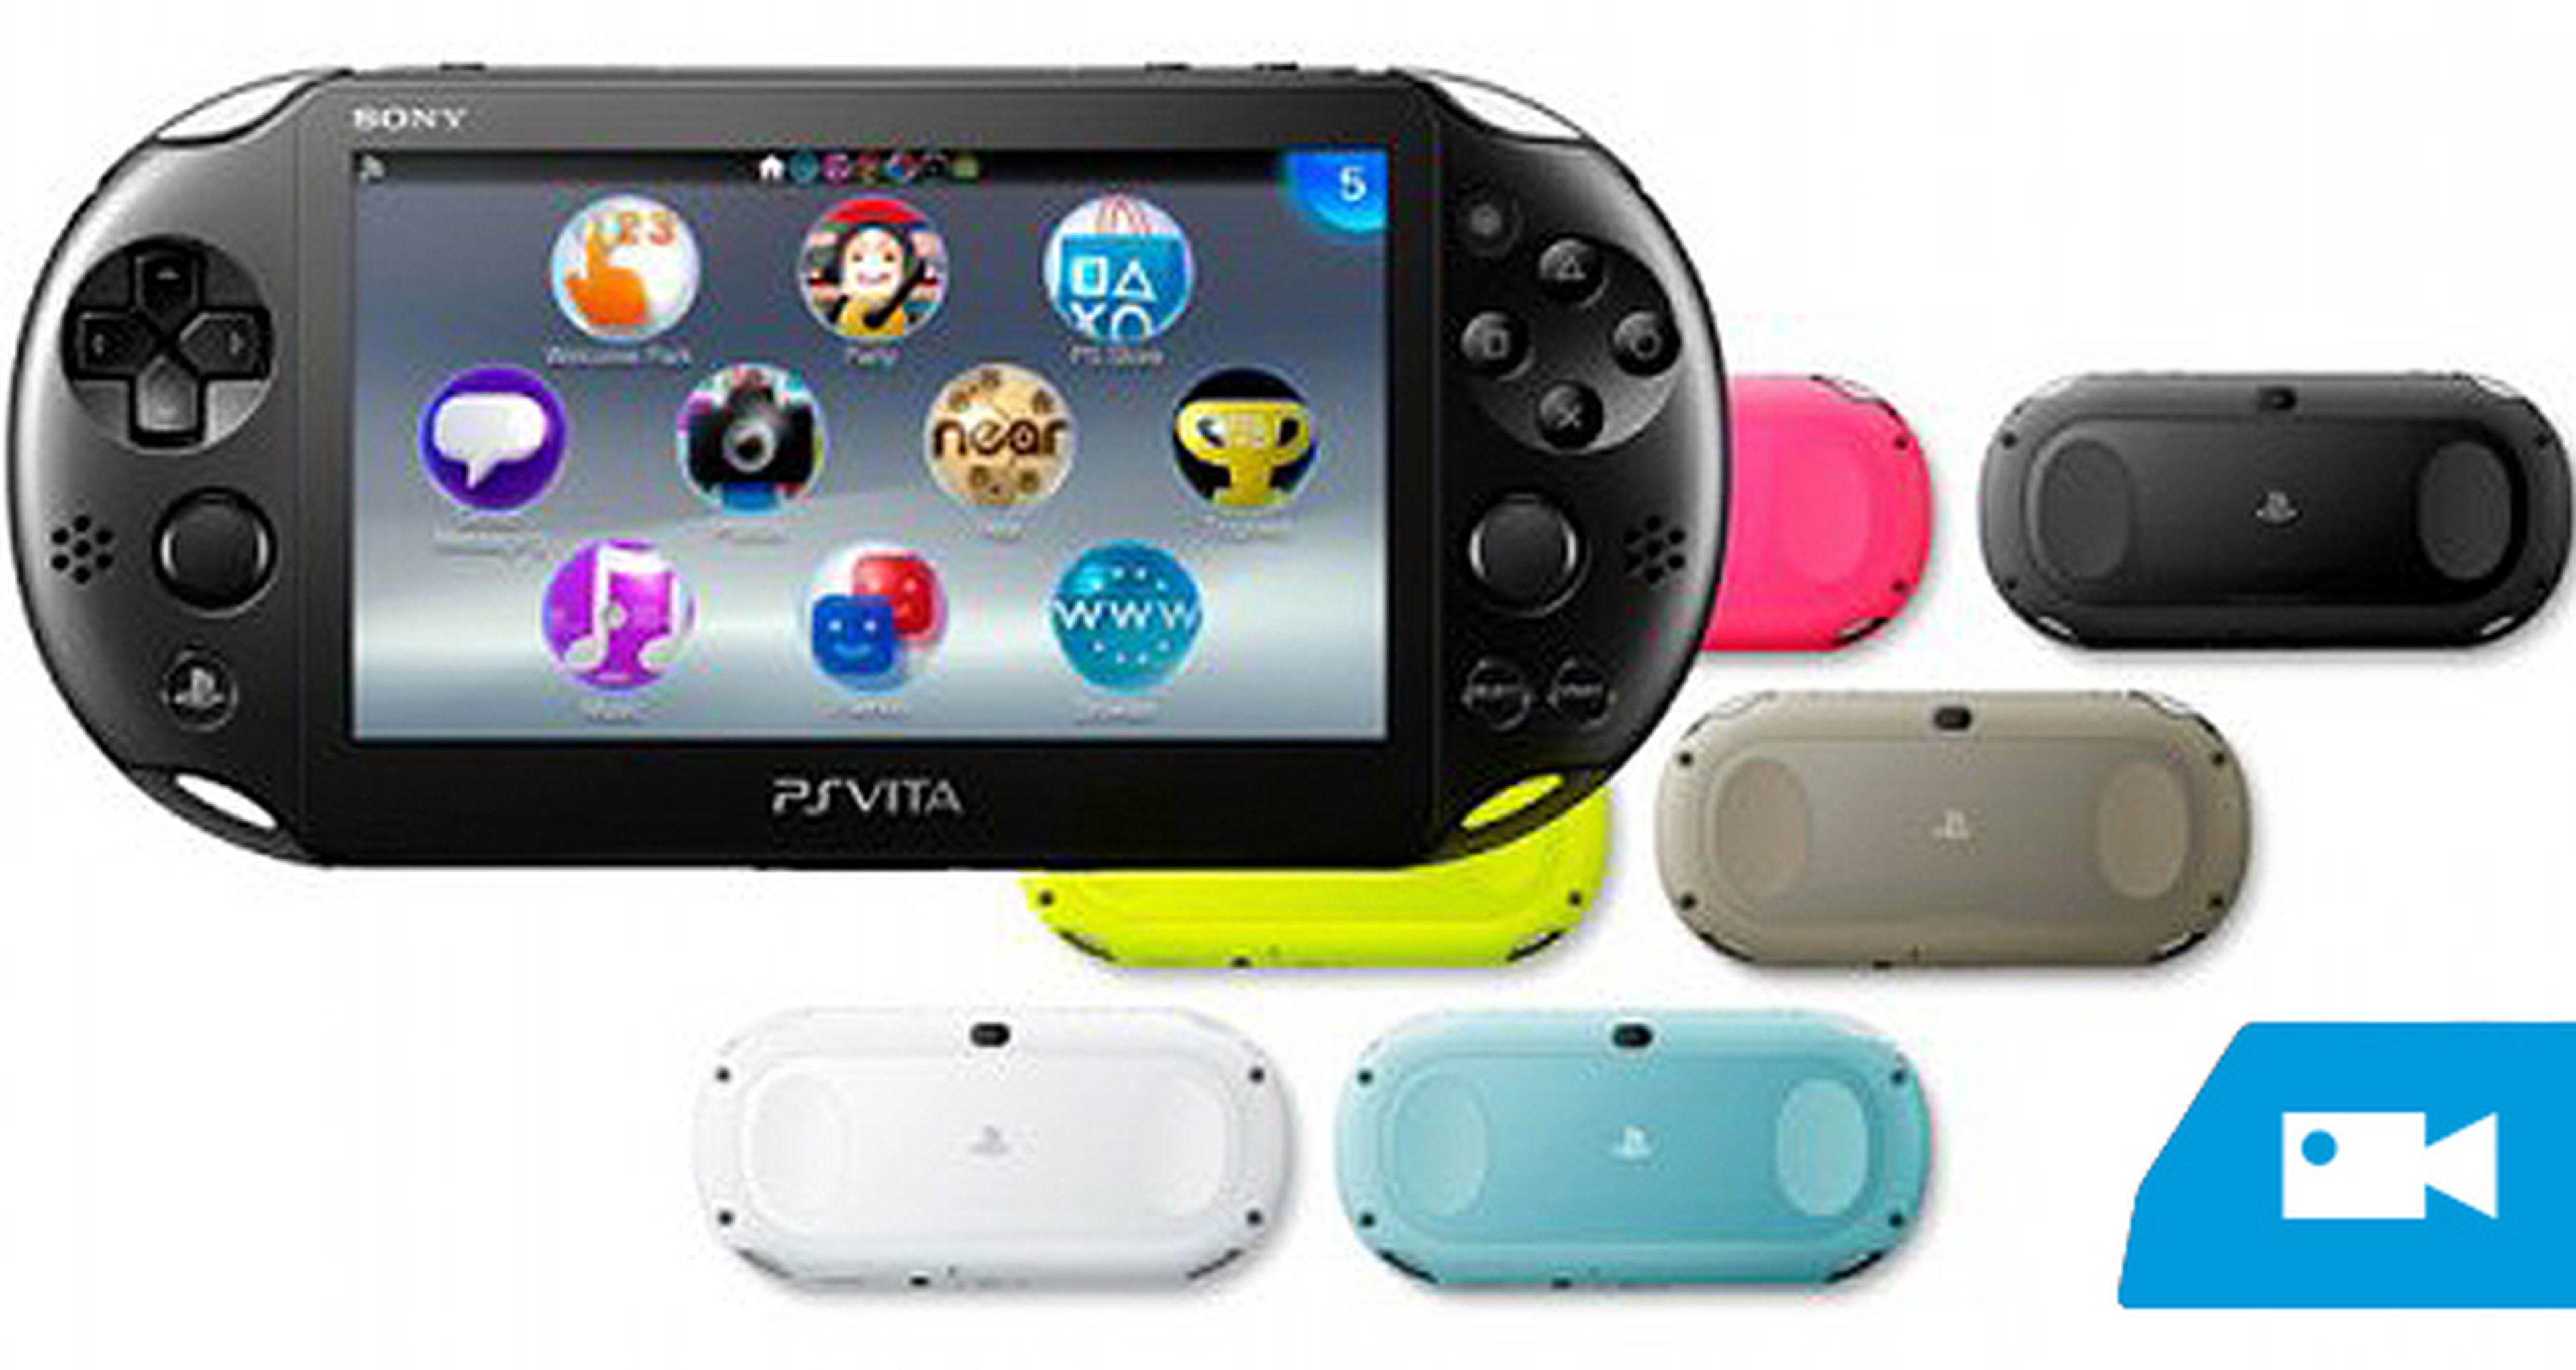 Comparativa de PS Vita 2000 y el modelo original